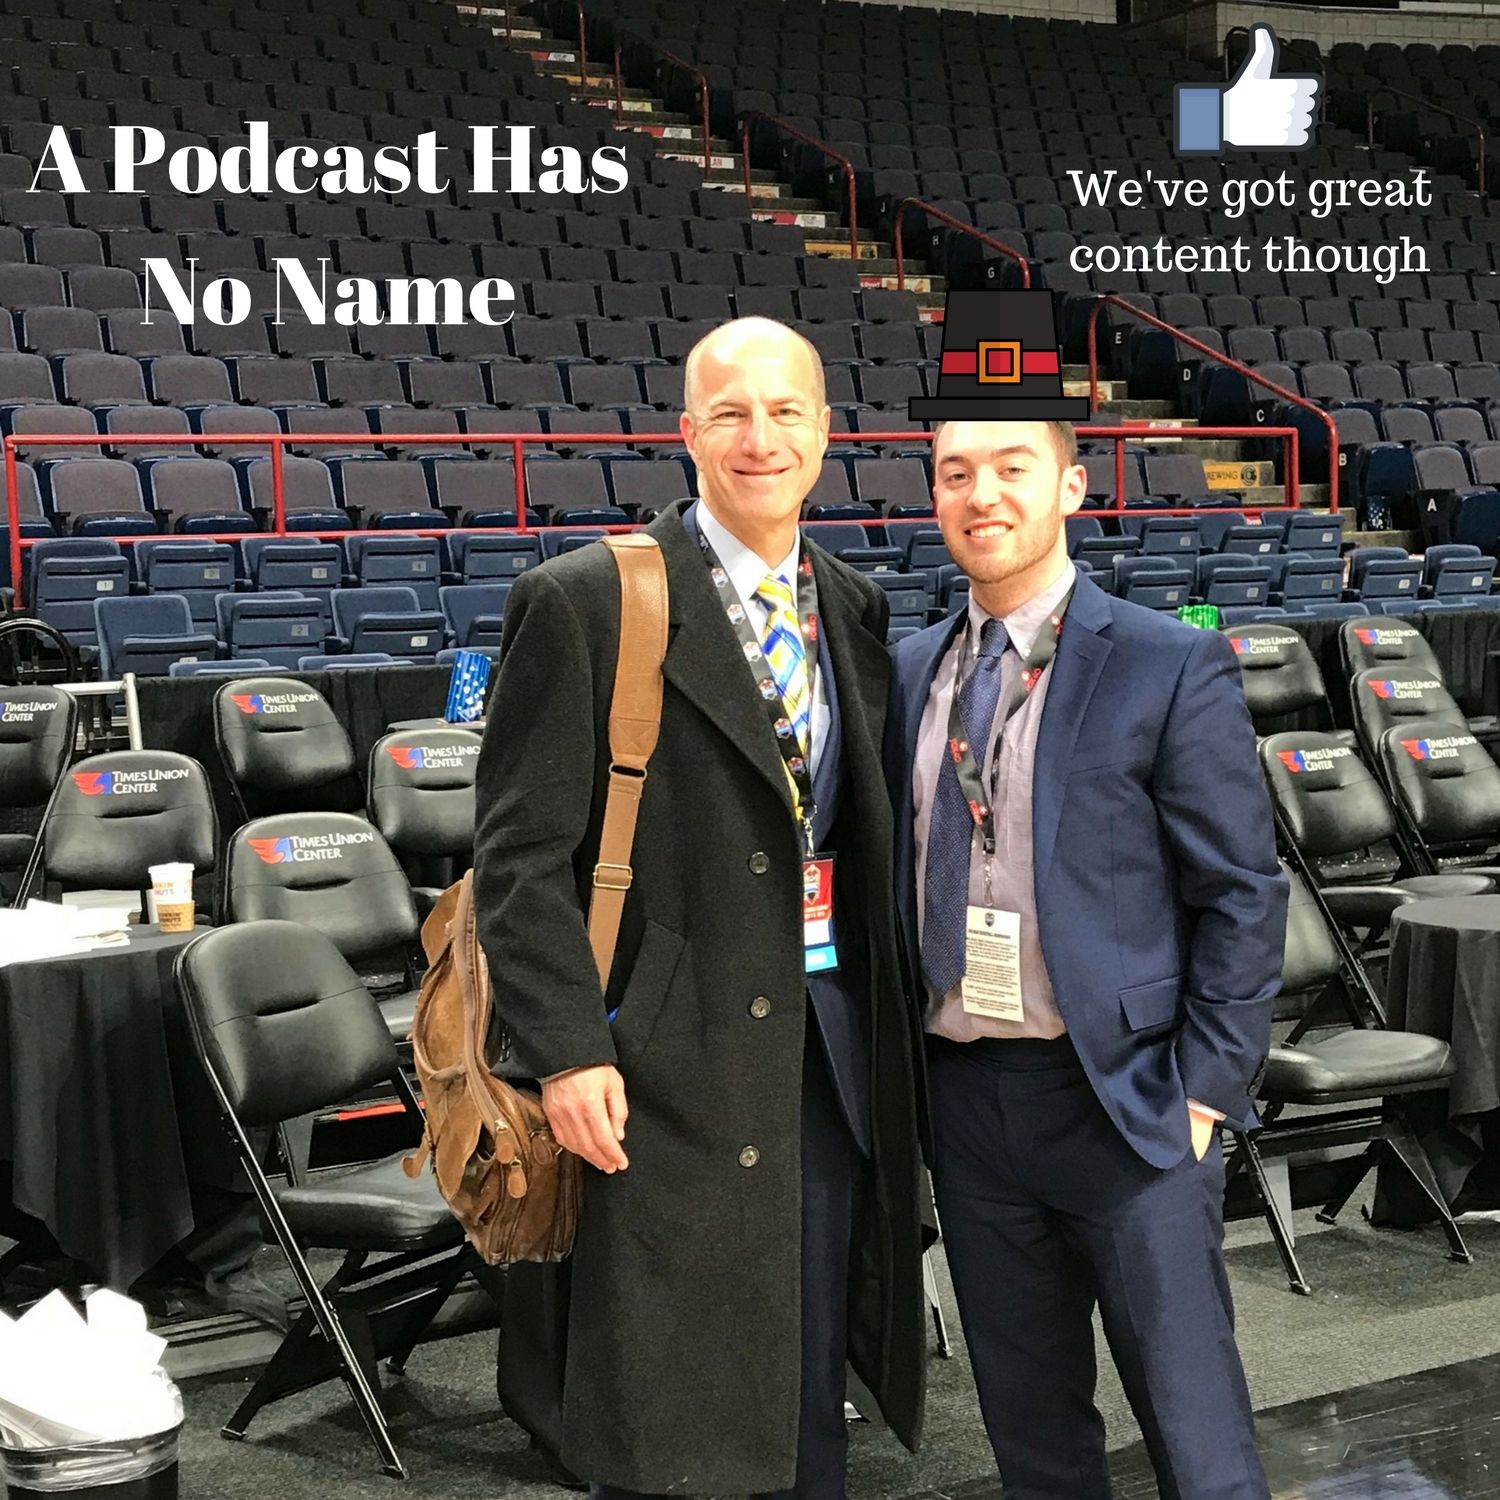 A Podcast Has No Name